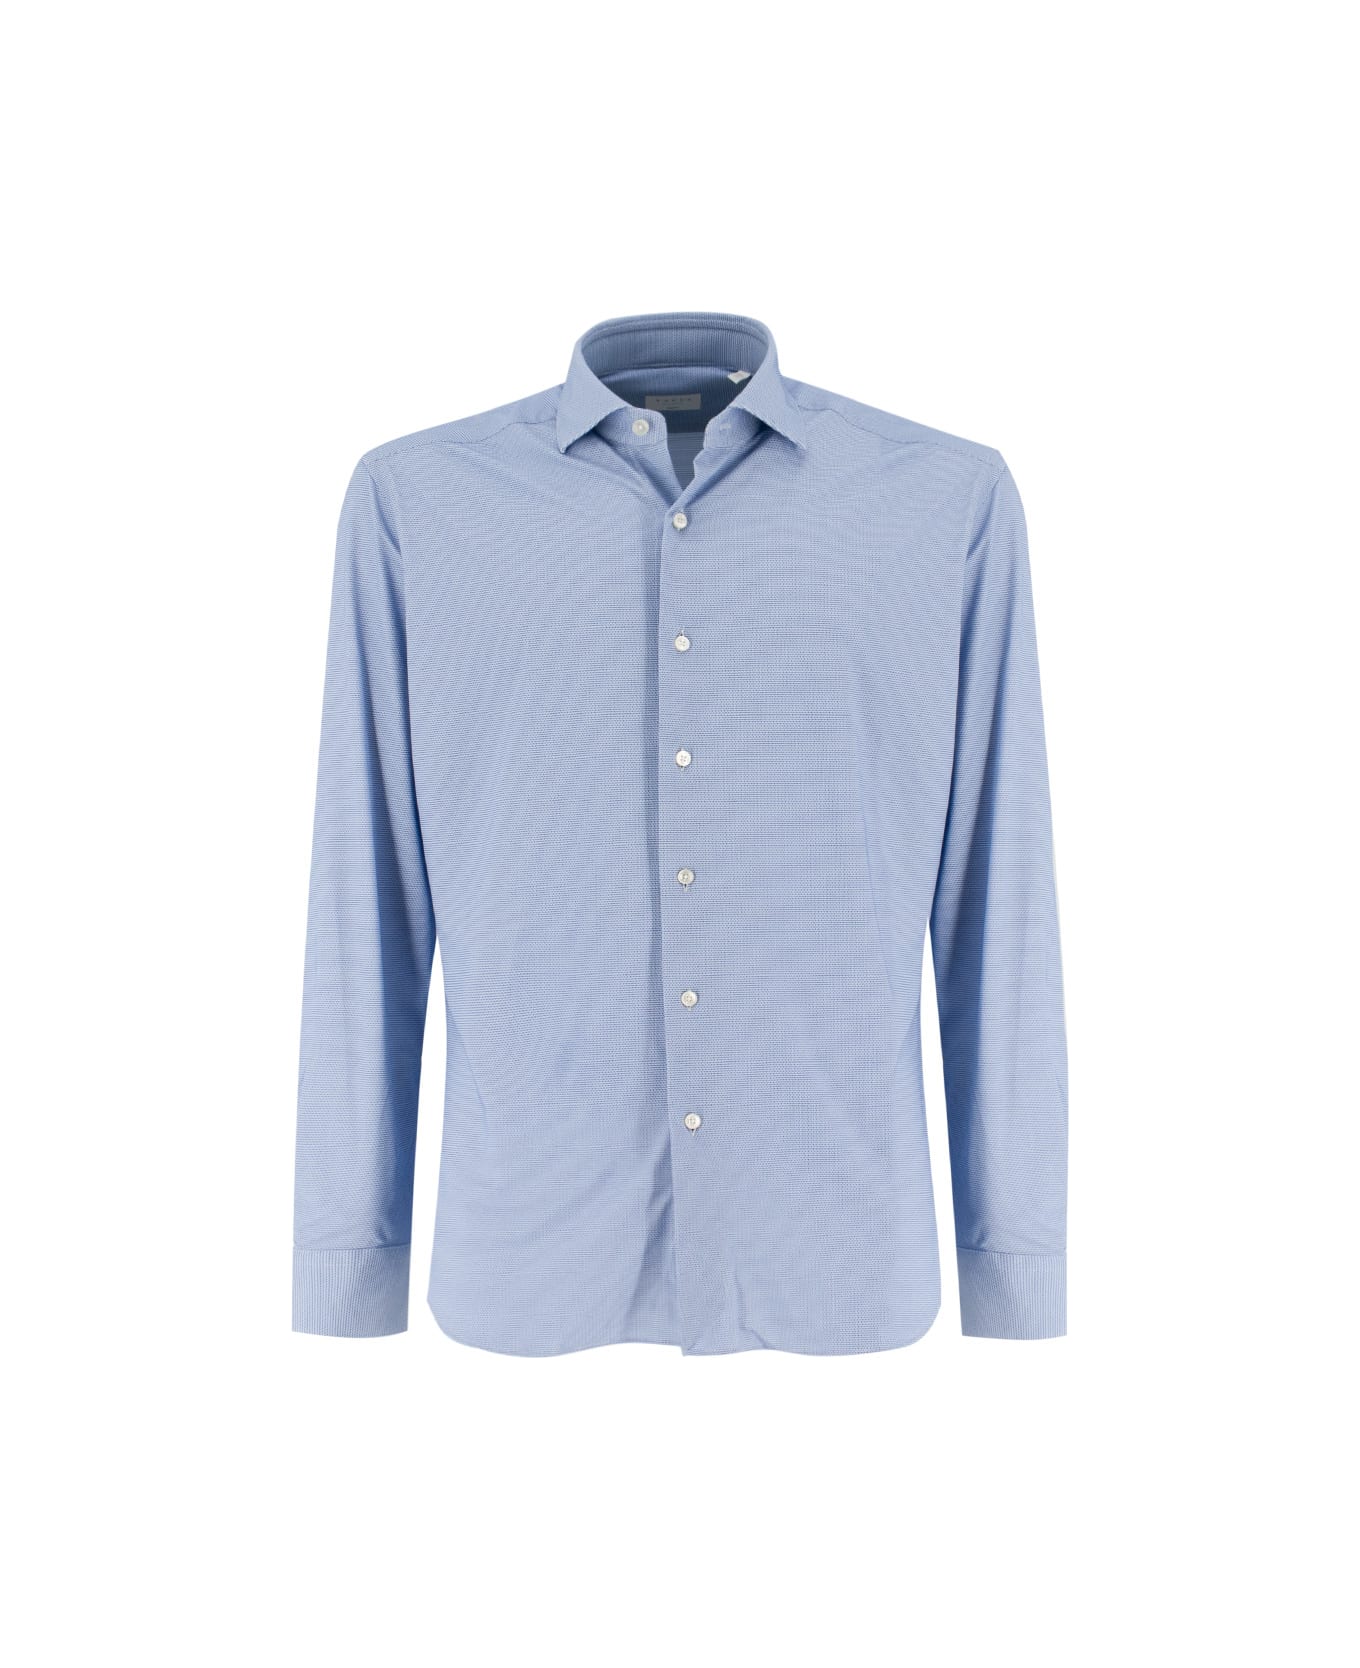 Xacus Shirt - BLU シャツ